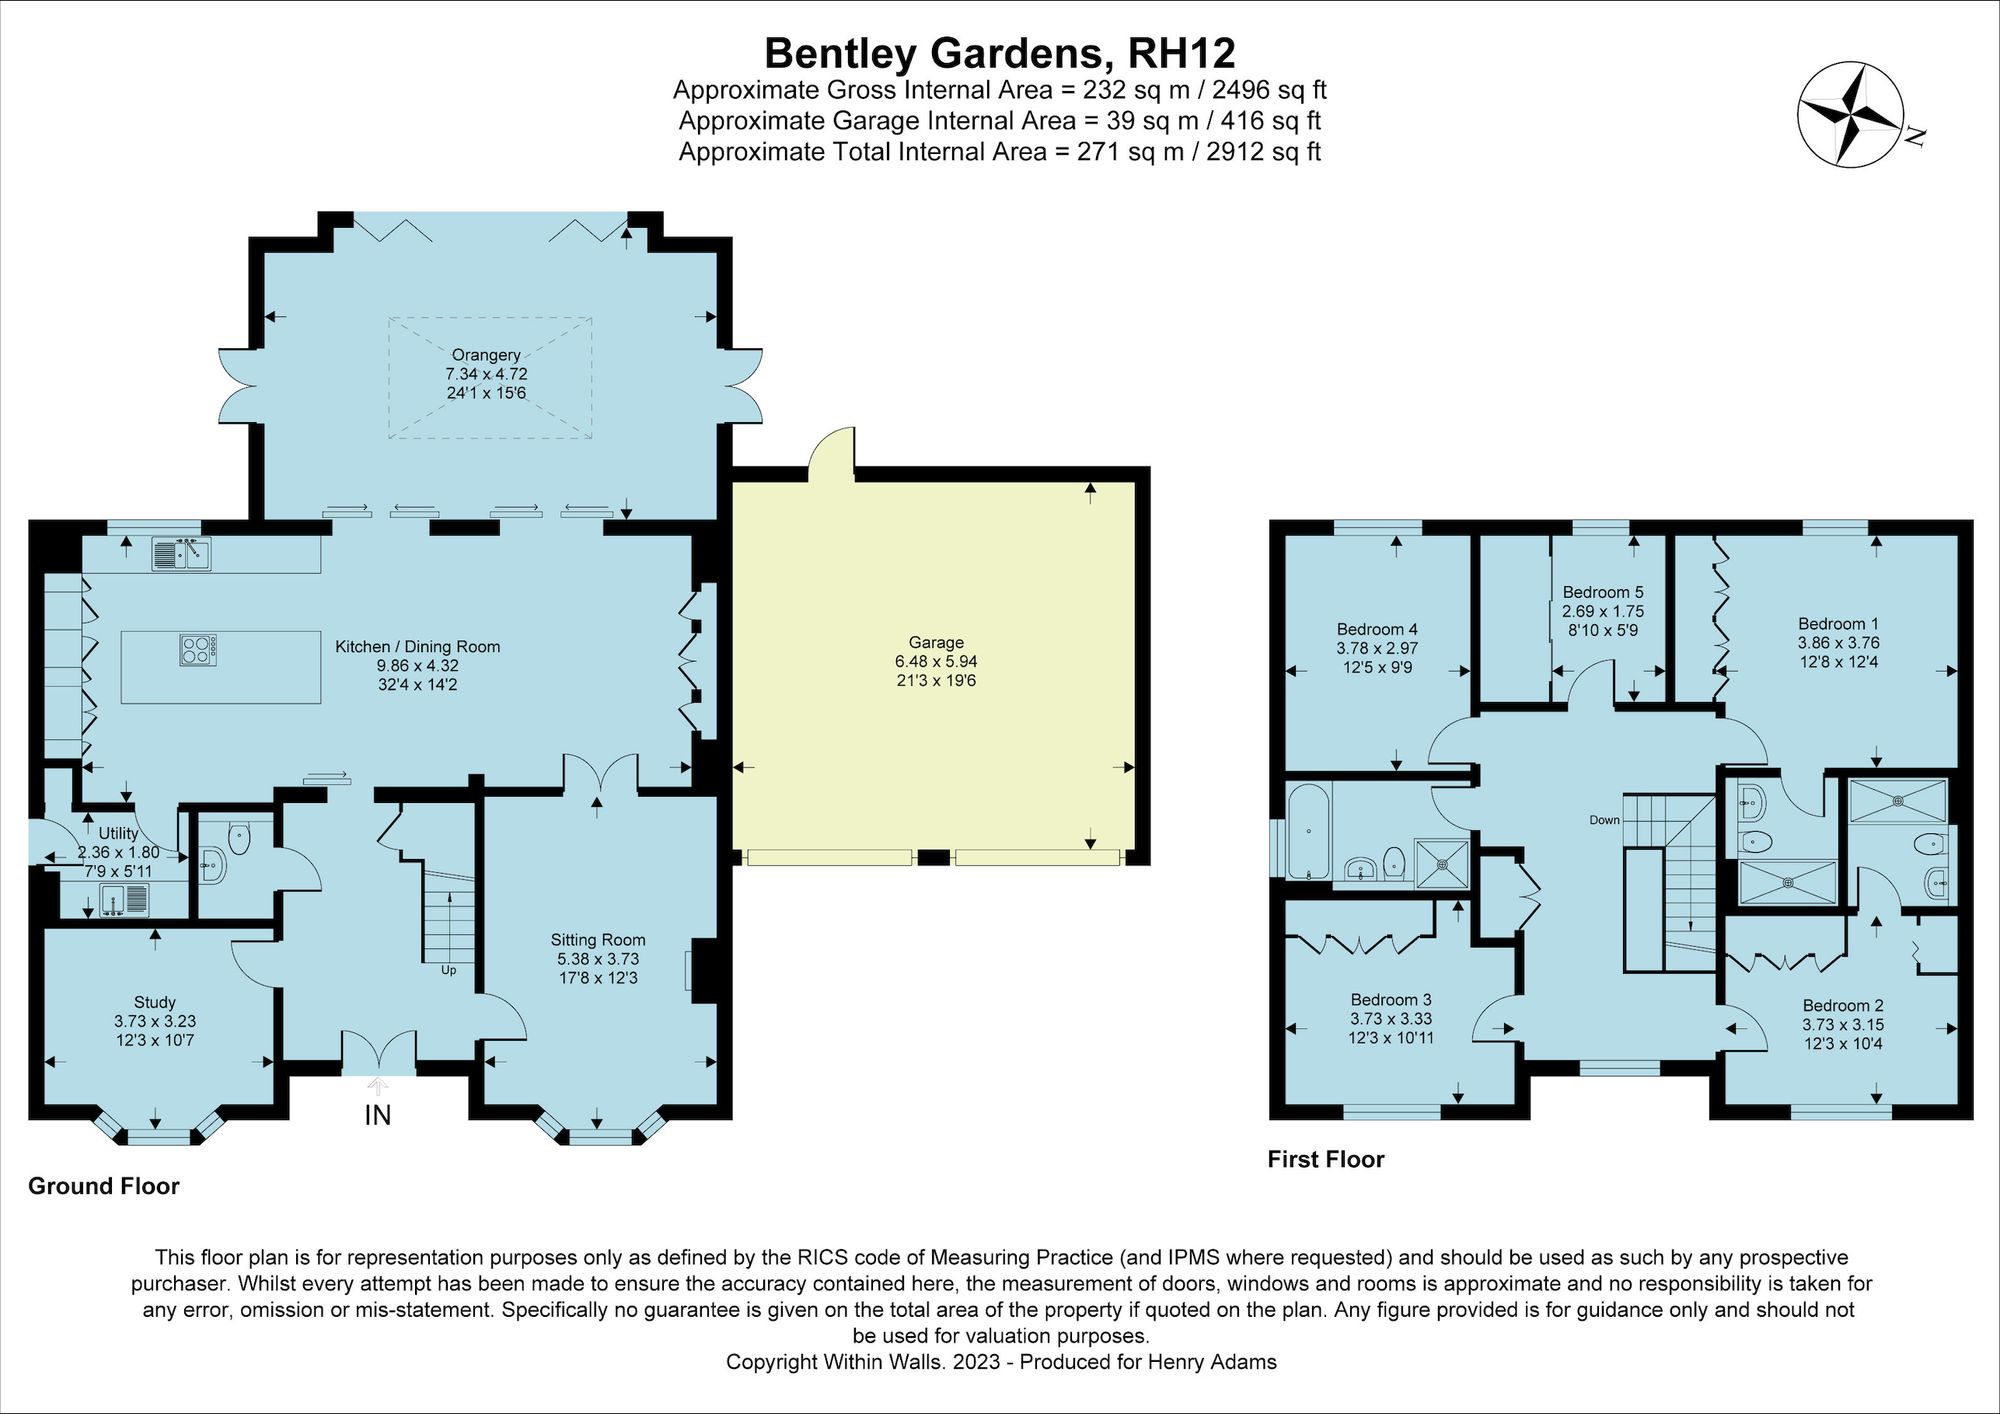 Bentley Gardens, Broadbridge Heath, RH12 floorplans